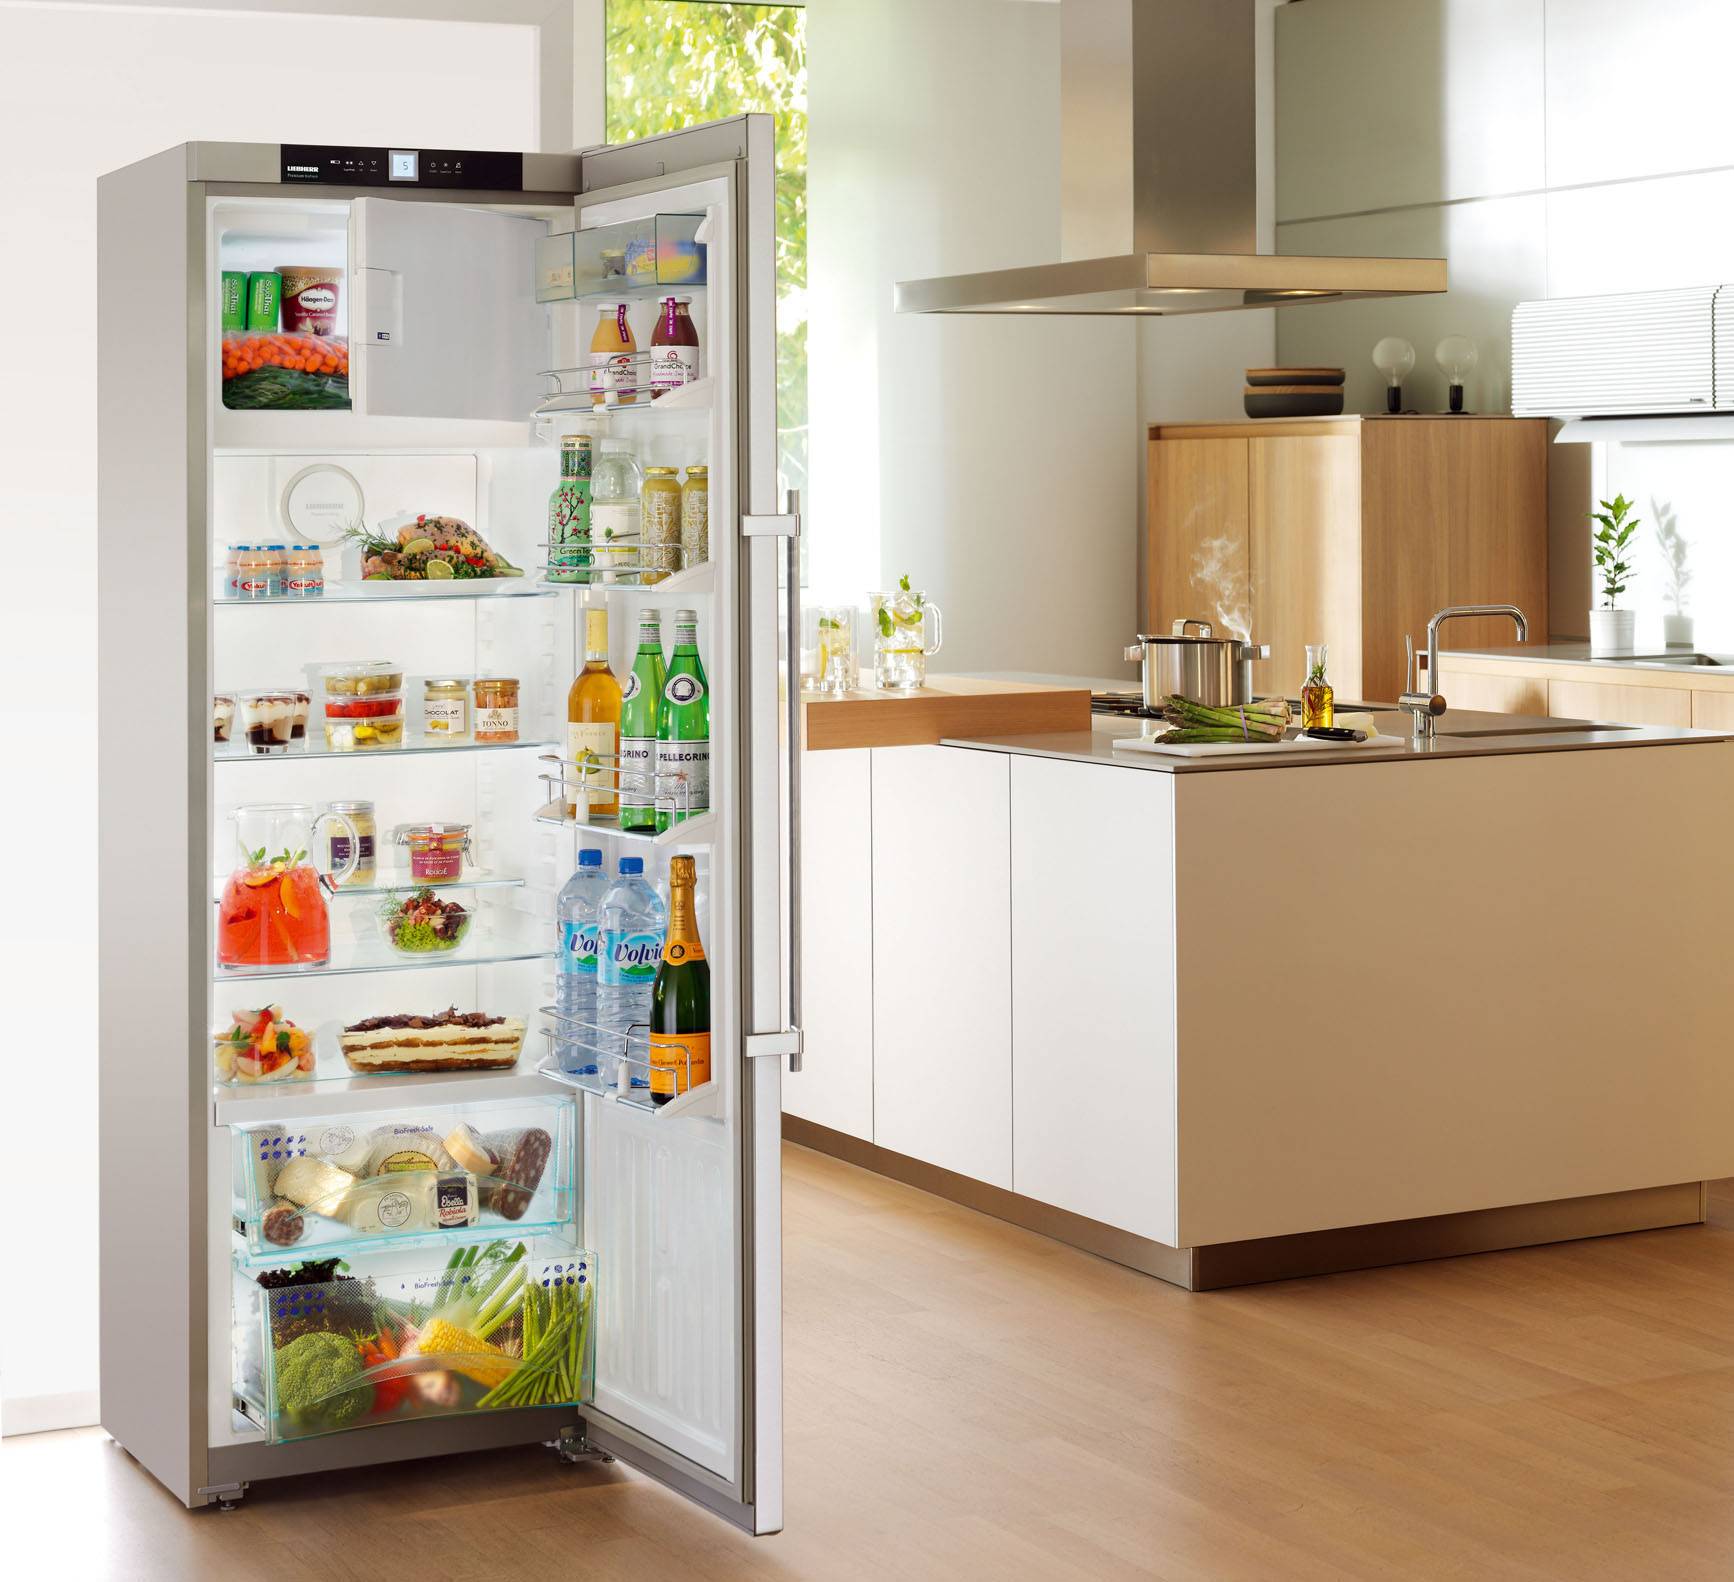 Холодильники ariston: топ-10 лучших моделей, отзывы, советы по выбору оборудования - все об инженерных системах